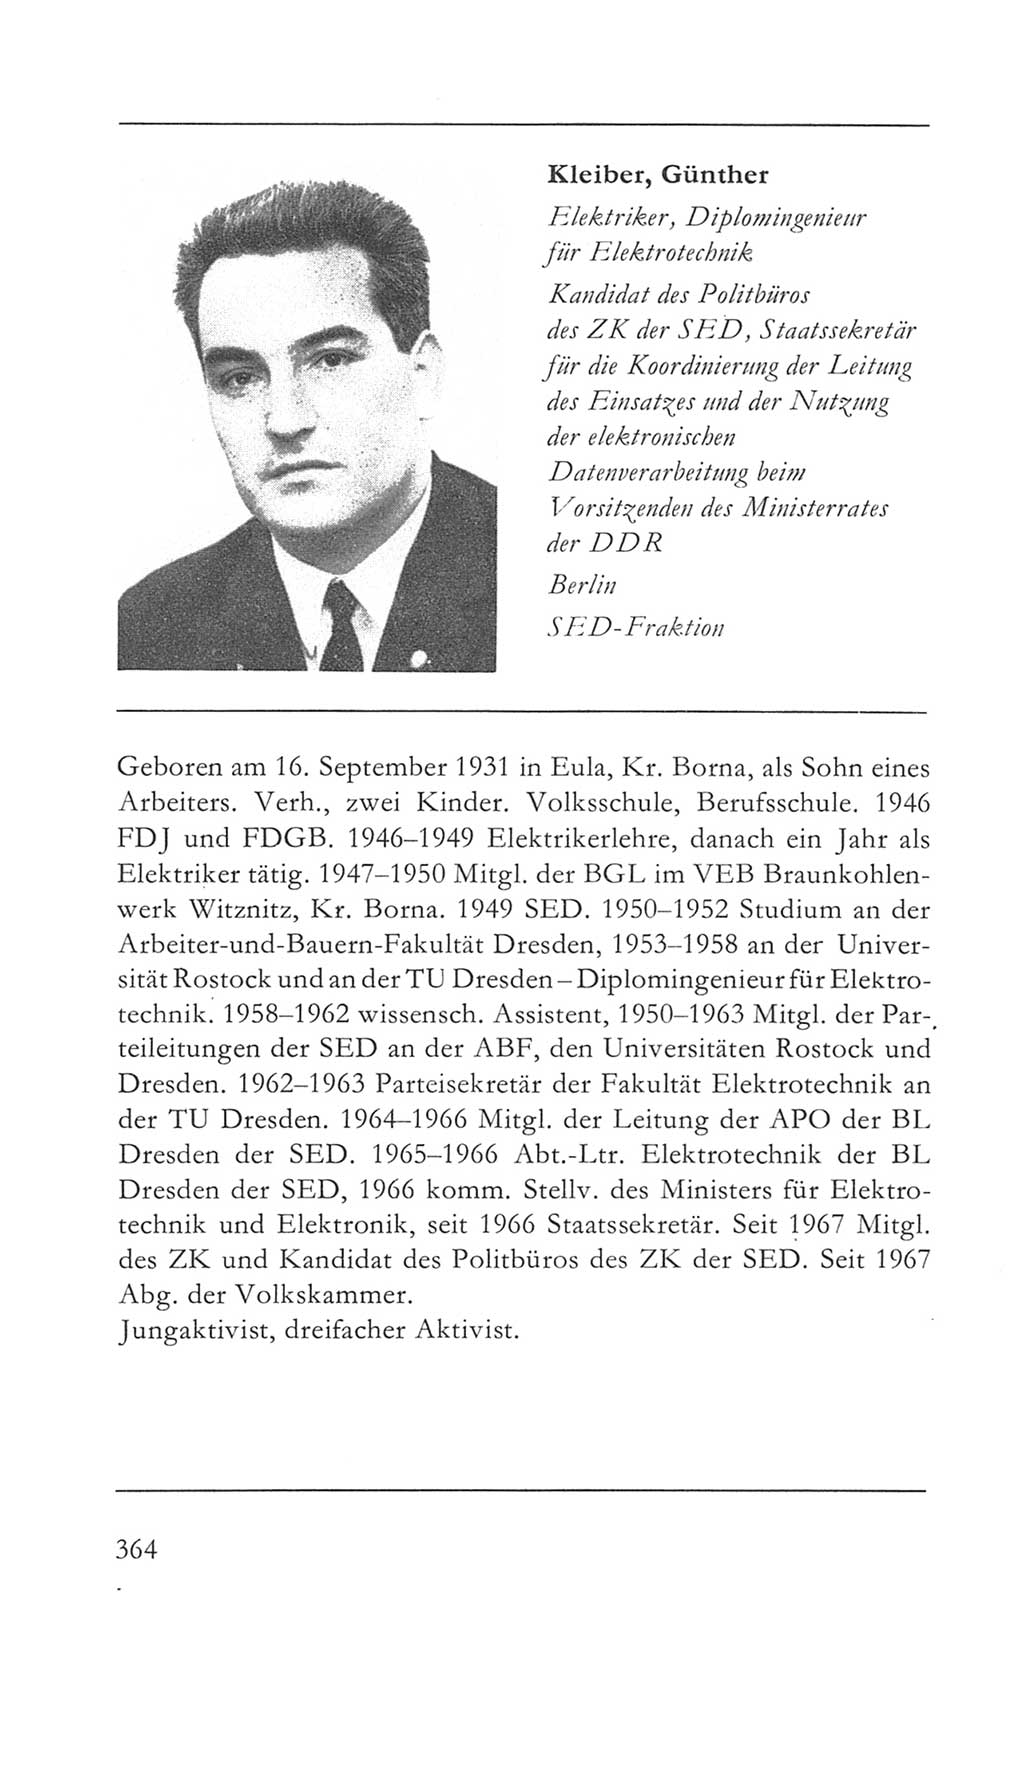 Volkskammer (VK) der Deutschen Demokratischen Republik (DDR) 5. Wahlperiode 1967-1971, Seite 364 (VK. DDR 5. WP. 1967-1971, S. 364)